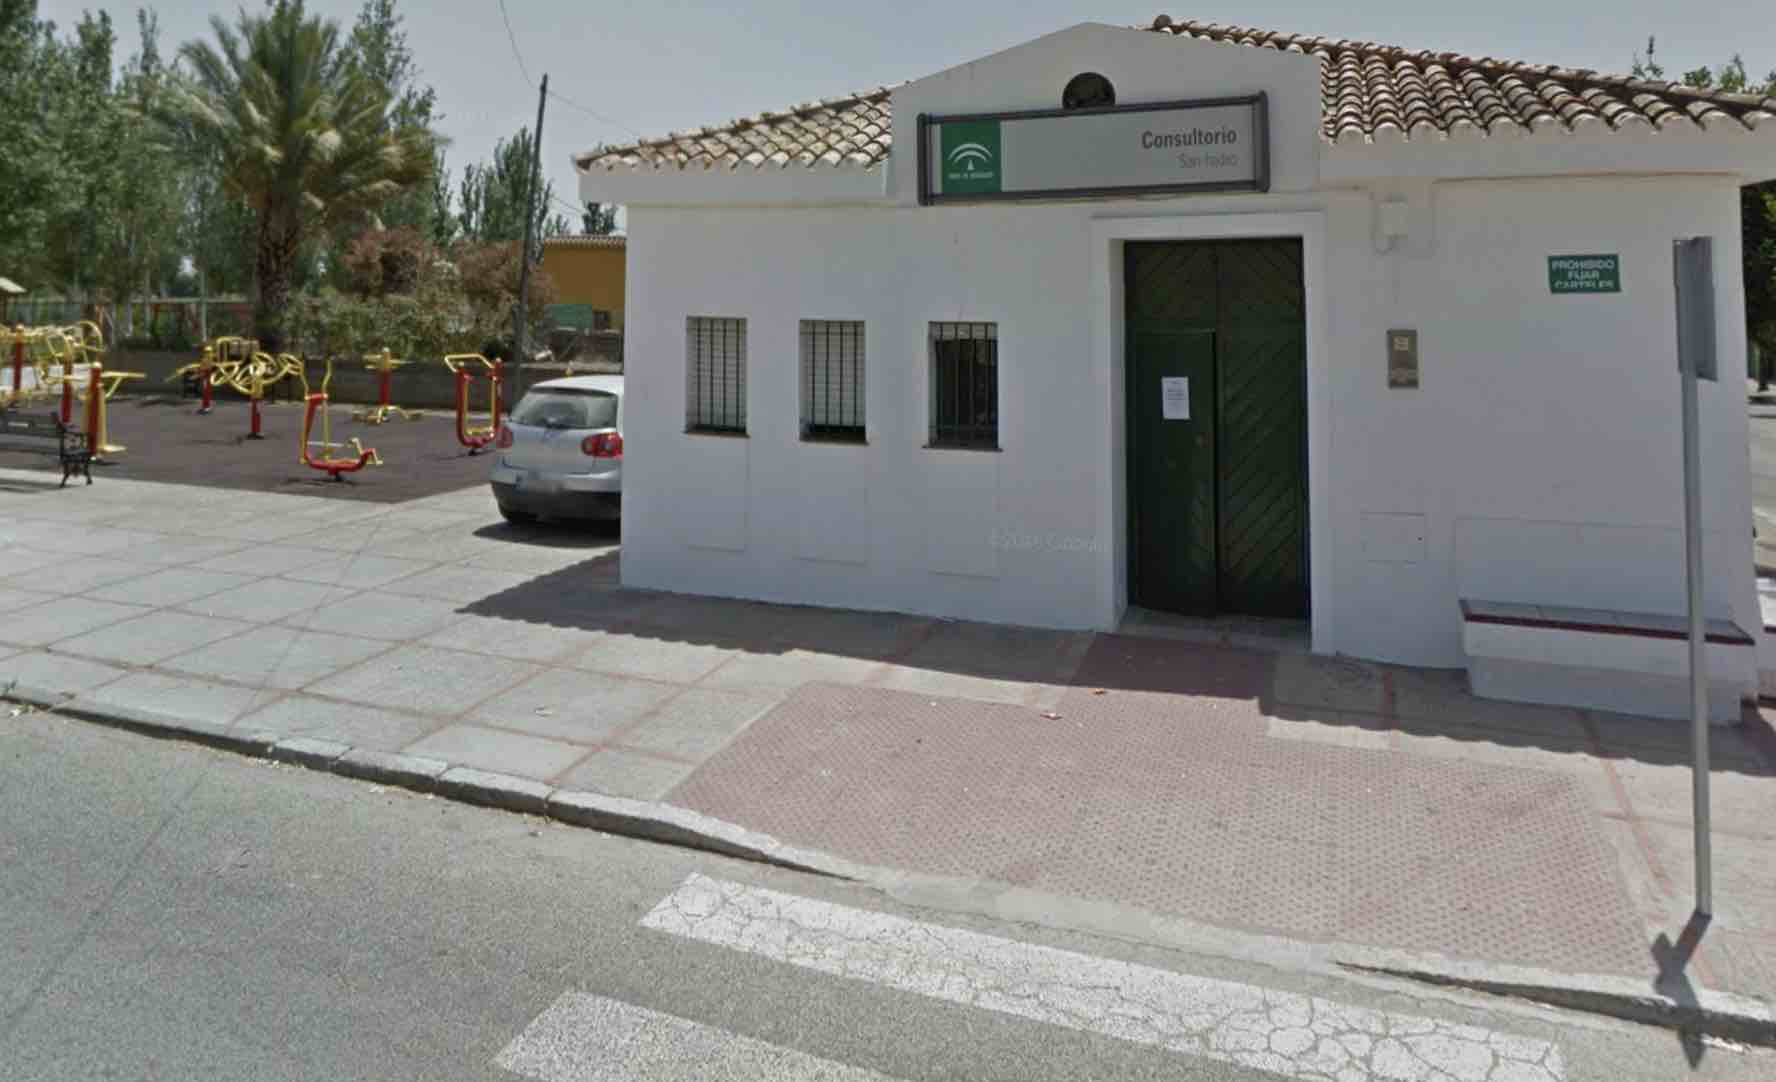 Consultorio de San Isidro, en una imagen de Google Maps.